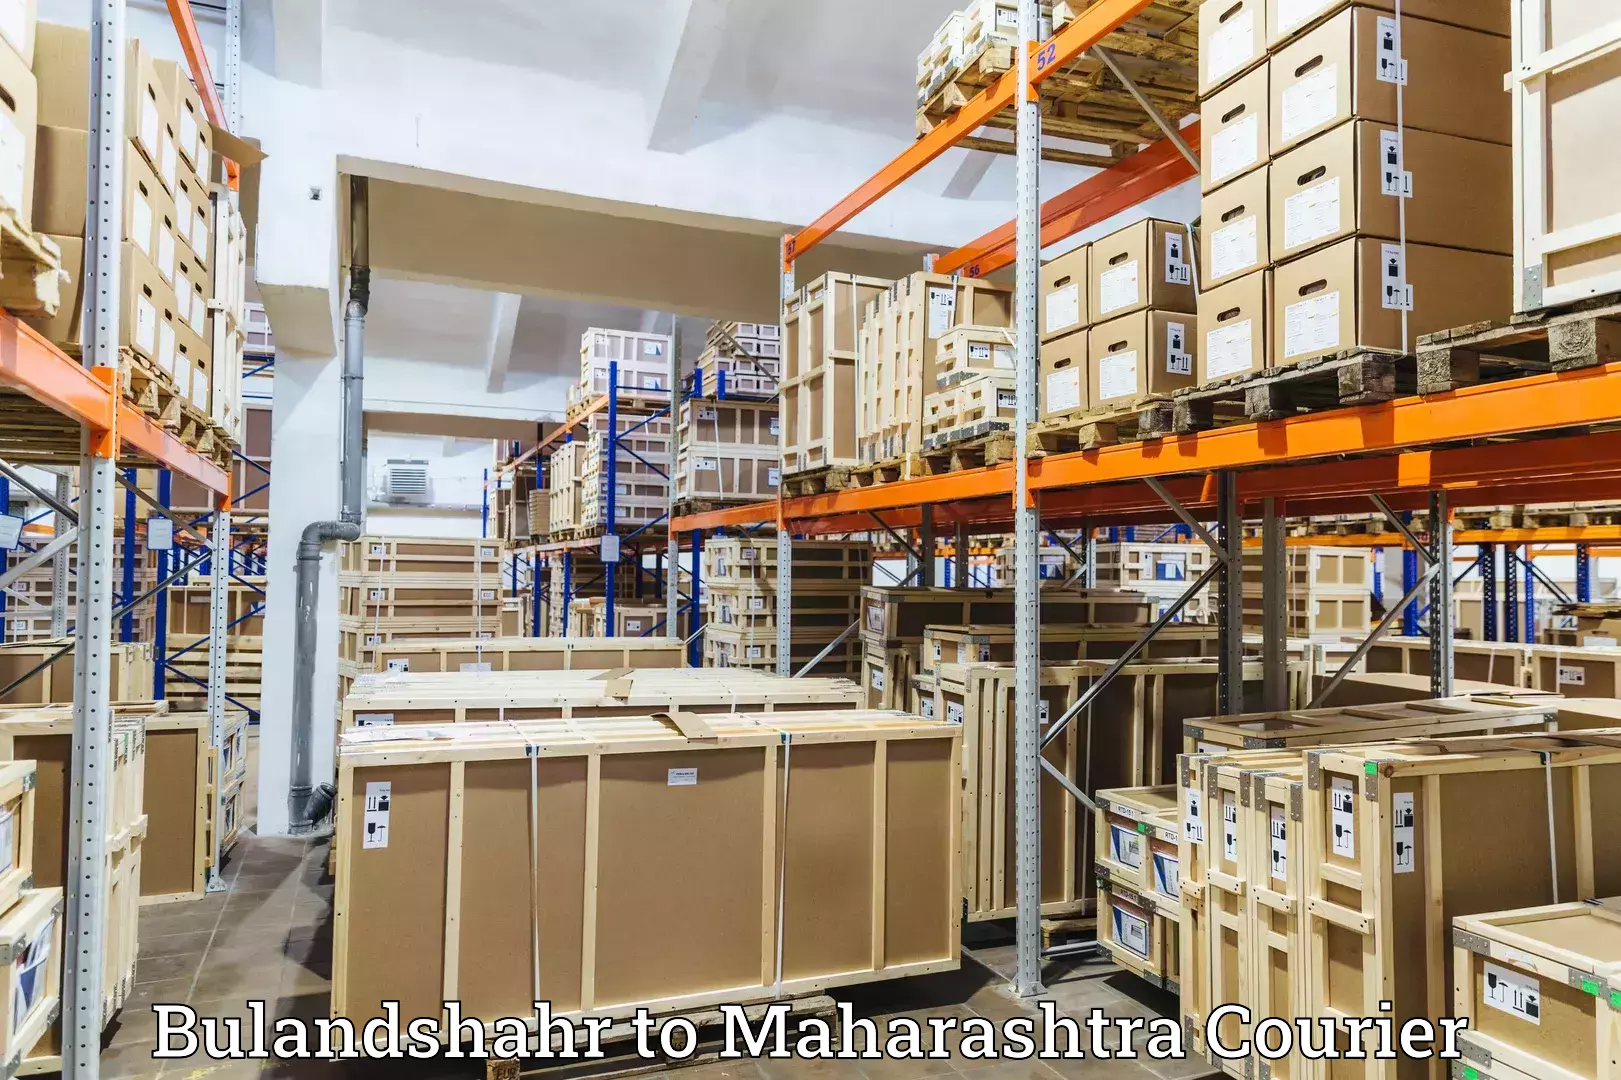 Express logistics providers Bulandshahr to Chopda